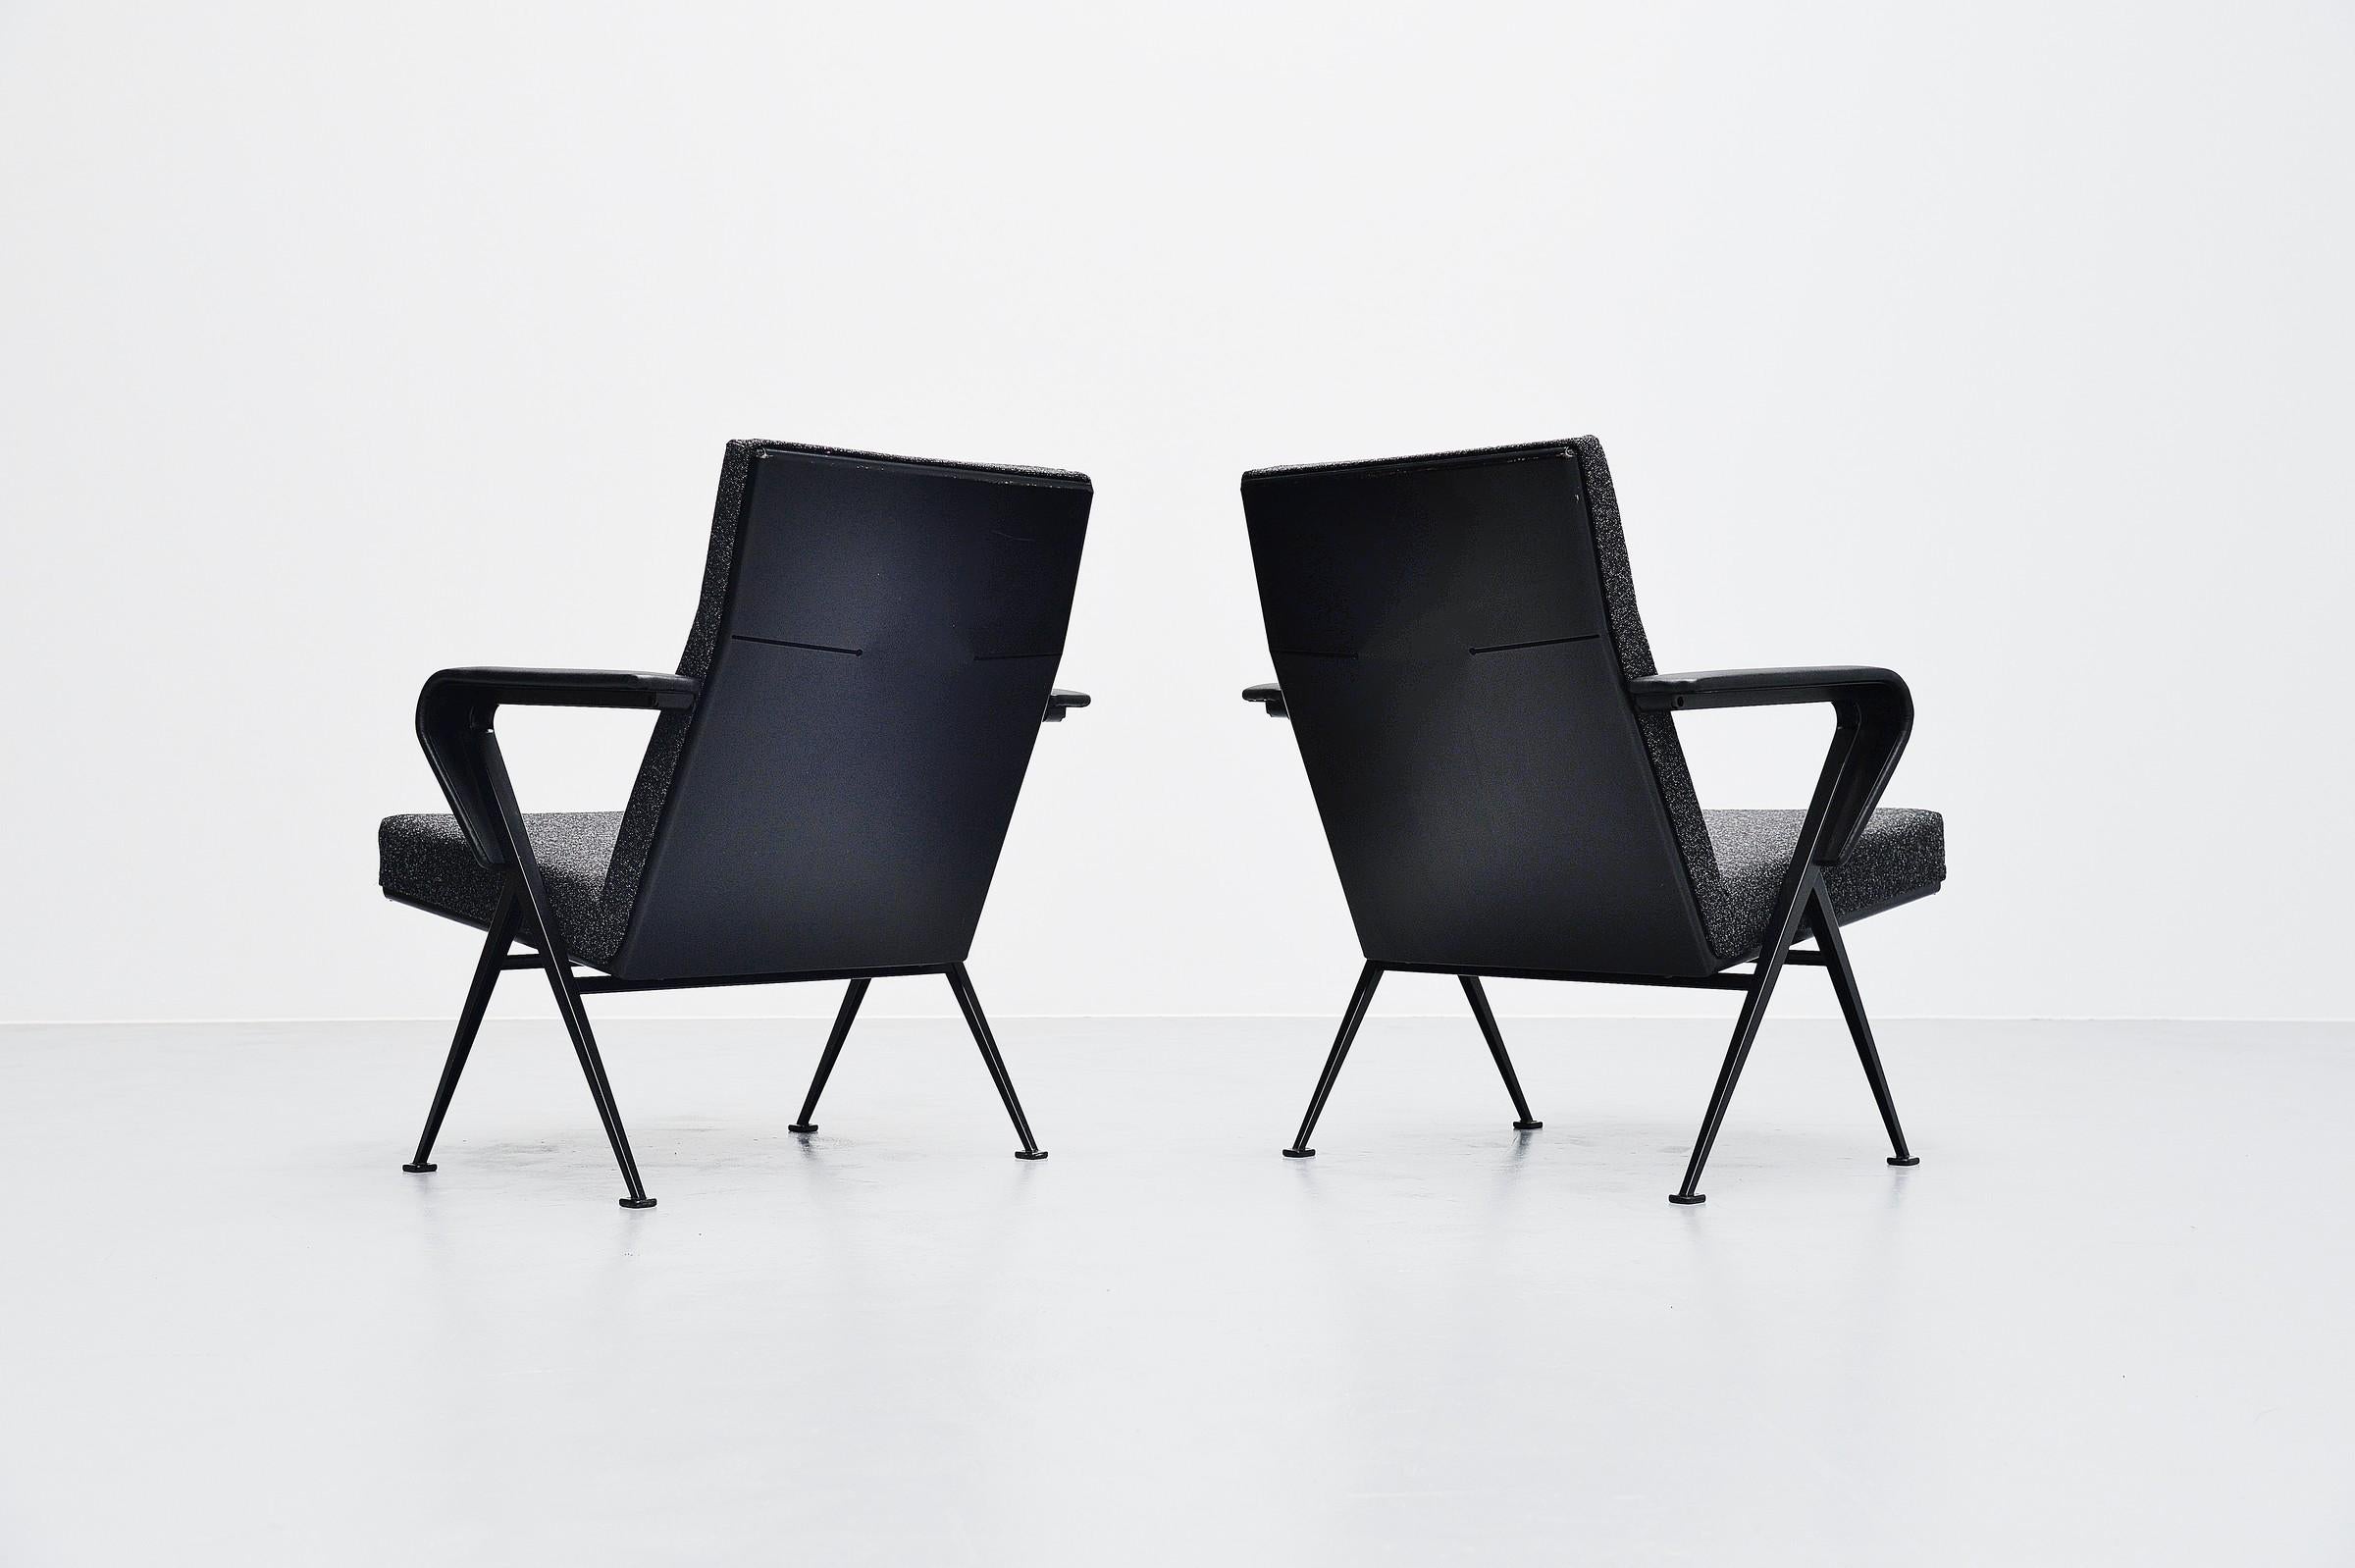 Importante paire de fauteuils modernistes modèle Repose, conçus par Friso Kramer et fabriqués par Ahrend de Cirkel, Hollande 1959. Les chaises ont un très beau cadre en forme de V peint en noir avec des structures métalliques, encore plus belles et